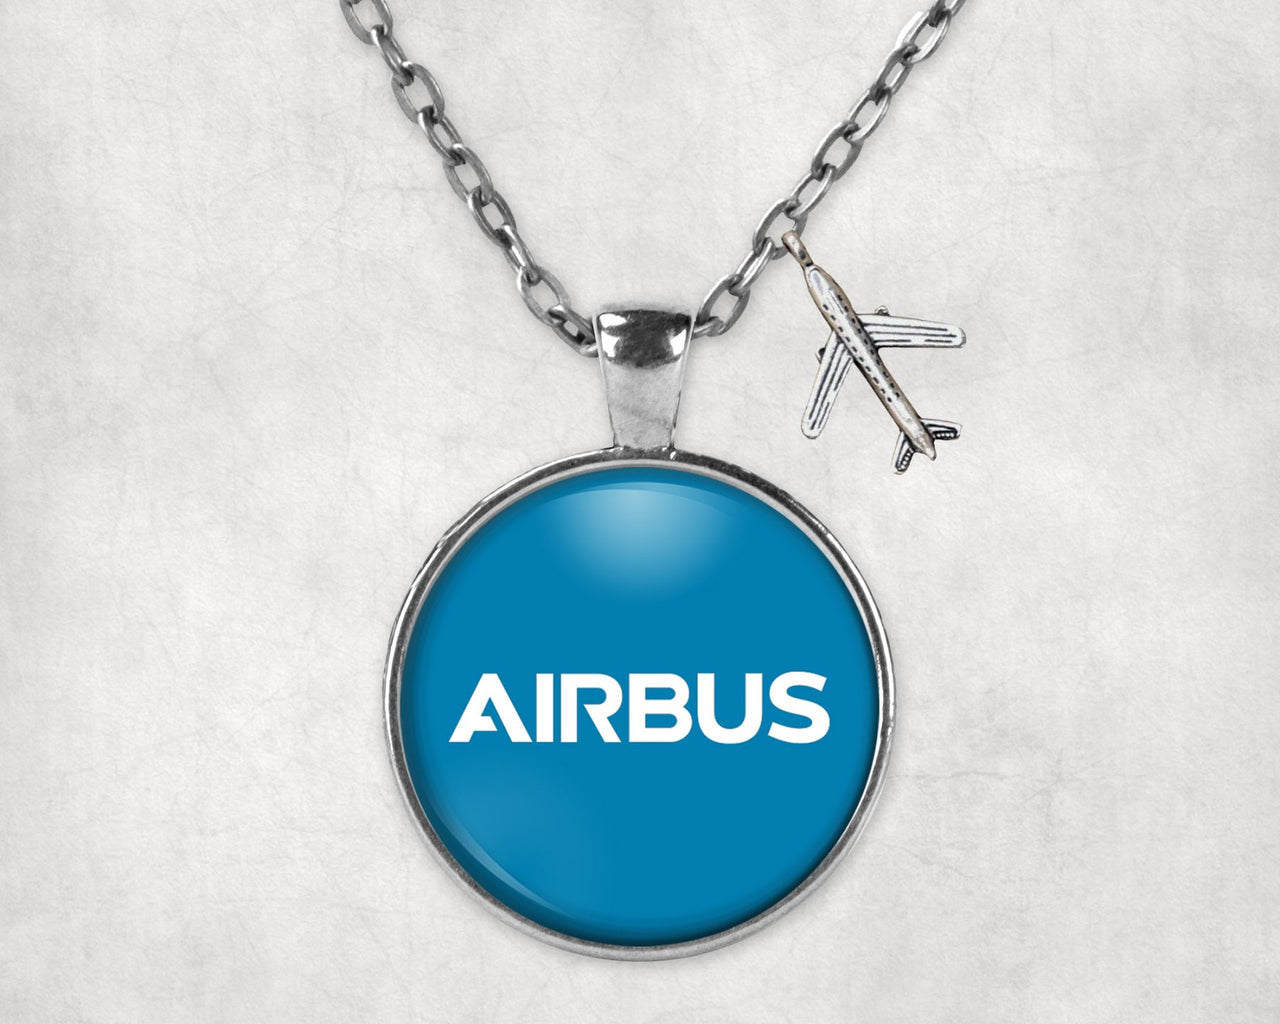 Airbus & Text Designed Necklaces